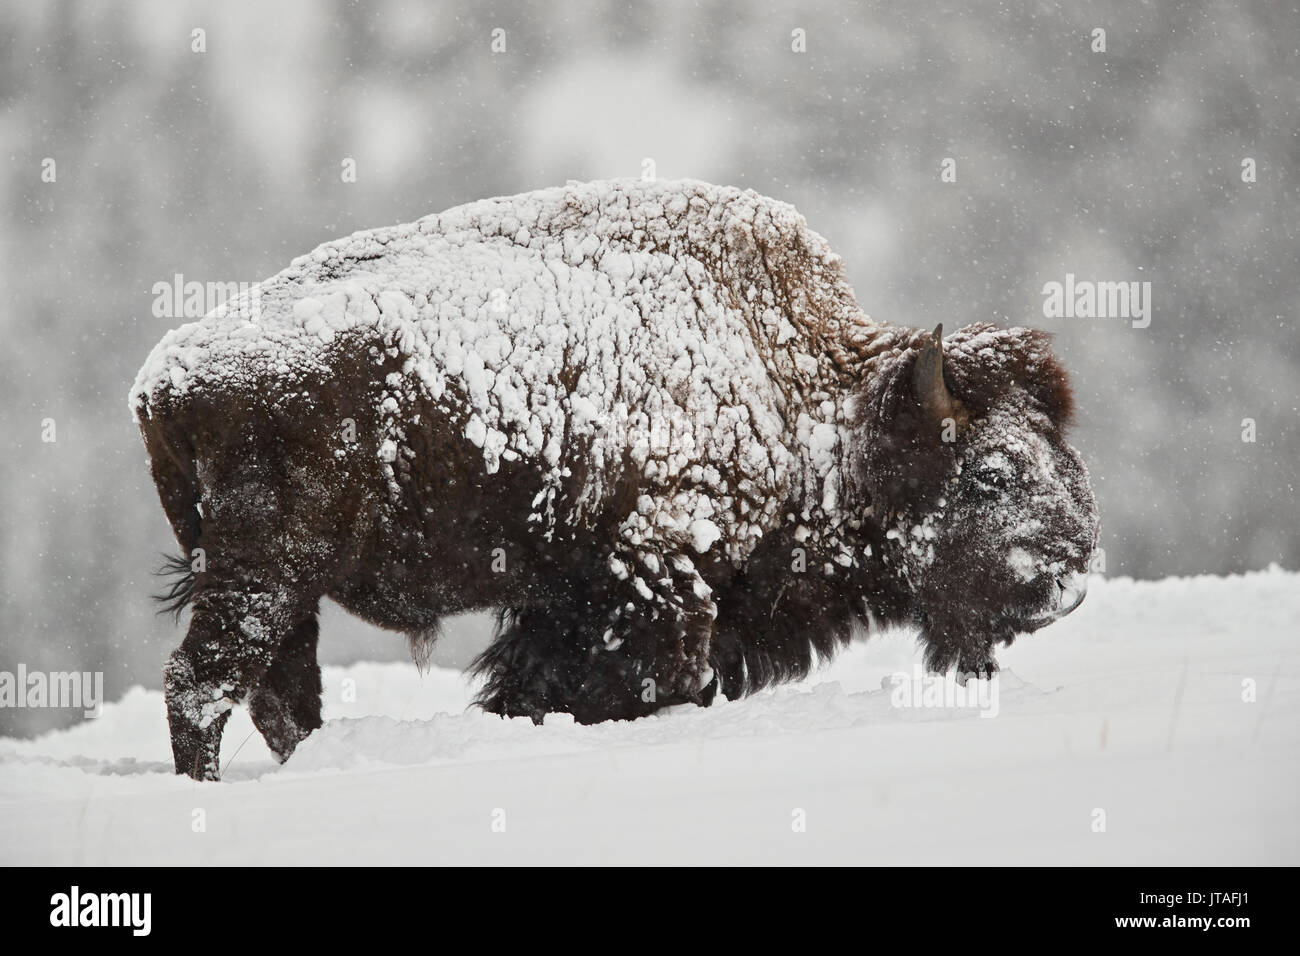 Bison (Bison Bison) Bulle, der im Winter bei Schneefall mit Schnee bedeckt ist, Yellowstone National Park, Wyoming, USA, Nordamerika Stockfoto